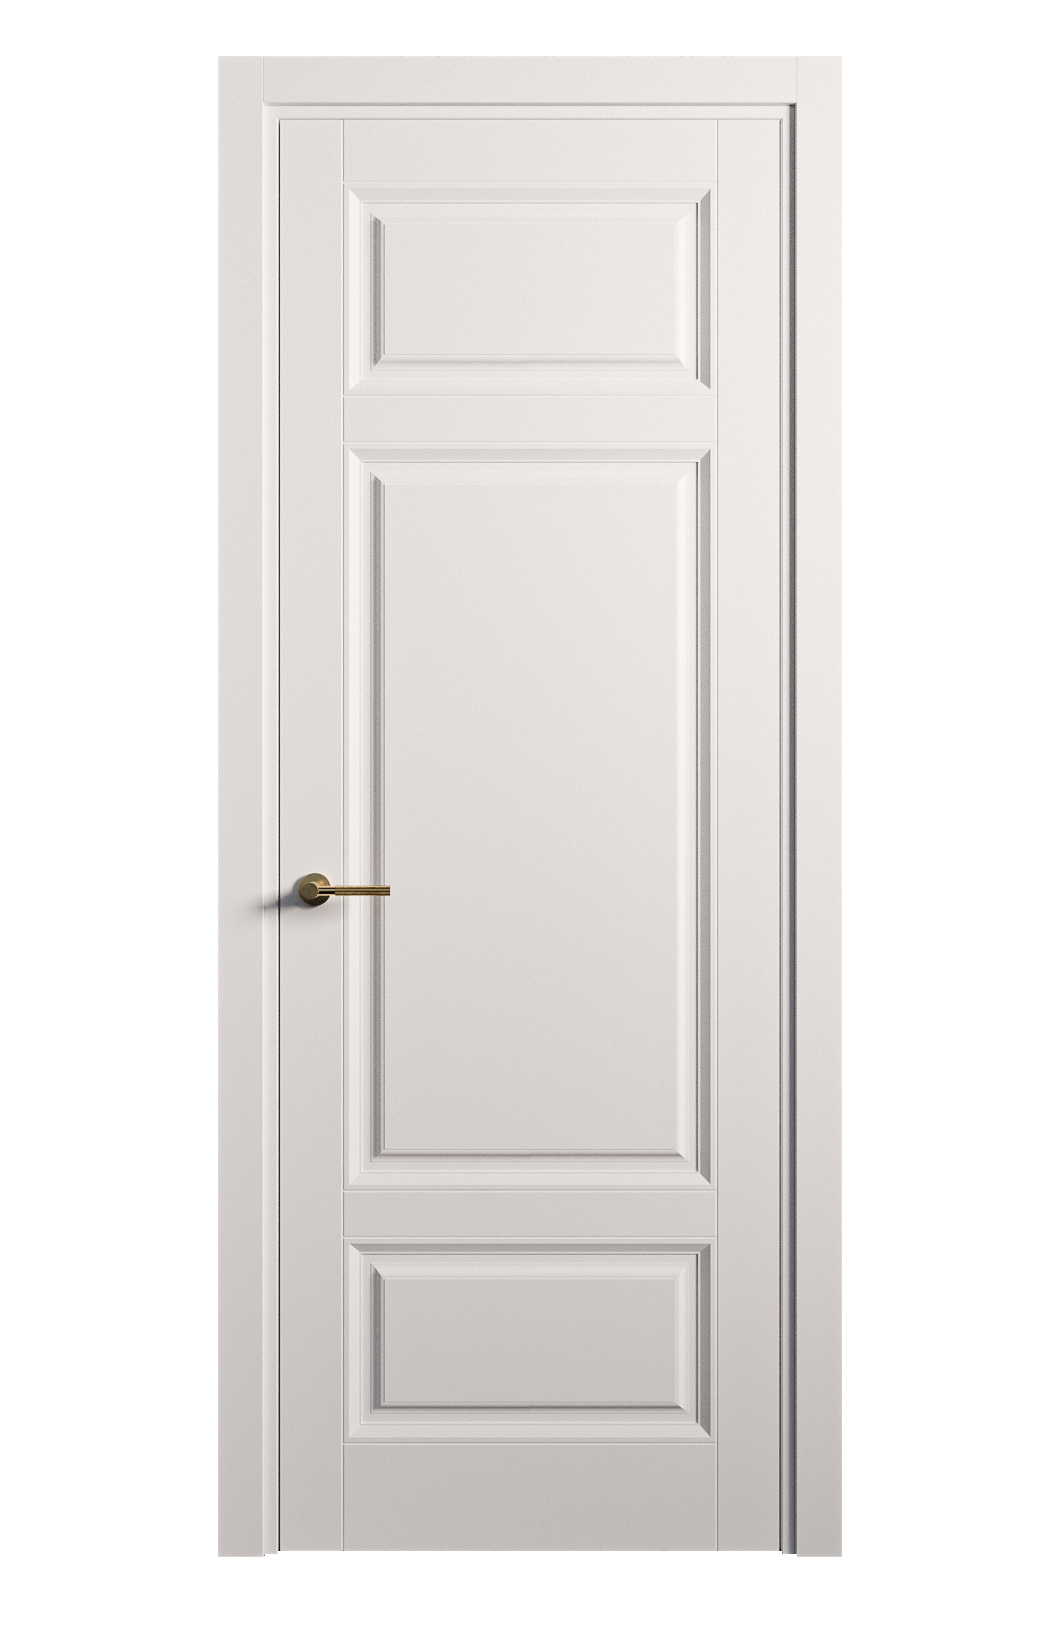 Межкомнатная дверь Venezia-5 глухая эмаль ral 9003 25911